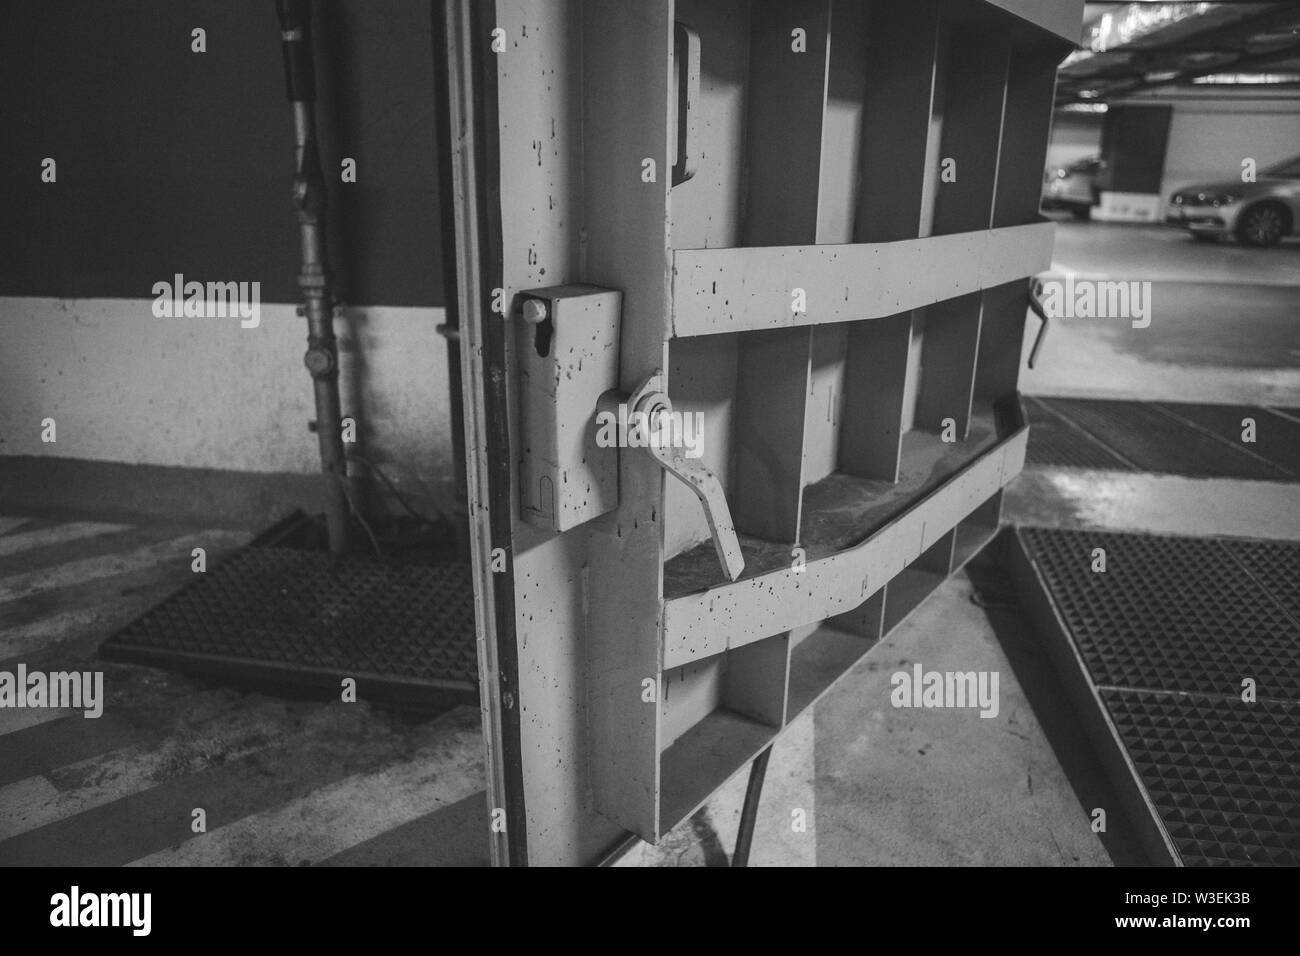 Details mit dem Heavy Metal Türen einer nuklearen Explosion Tierheim (Fallout shelter), vier Stockwerke unter der Erde in einem tiefen unterirdischen Parkplatz-b Stockfoto